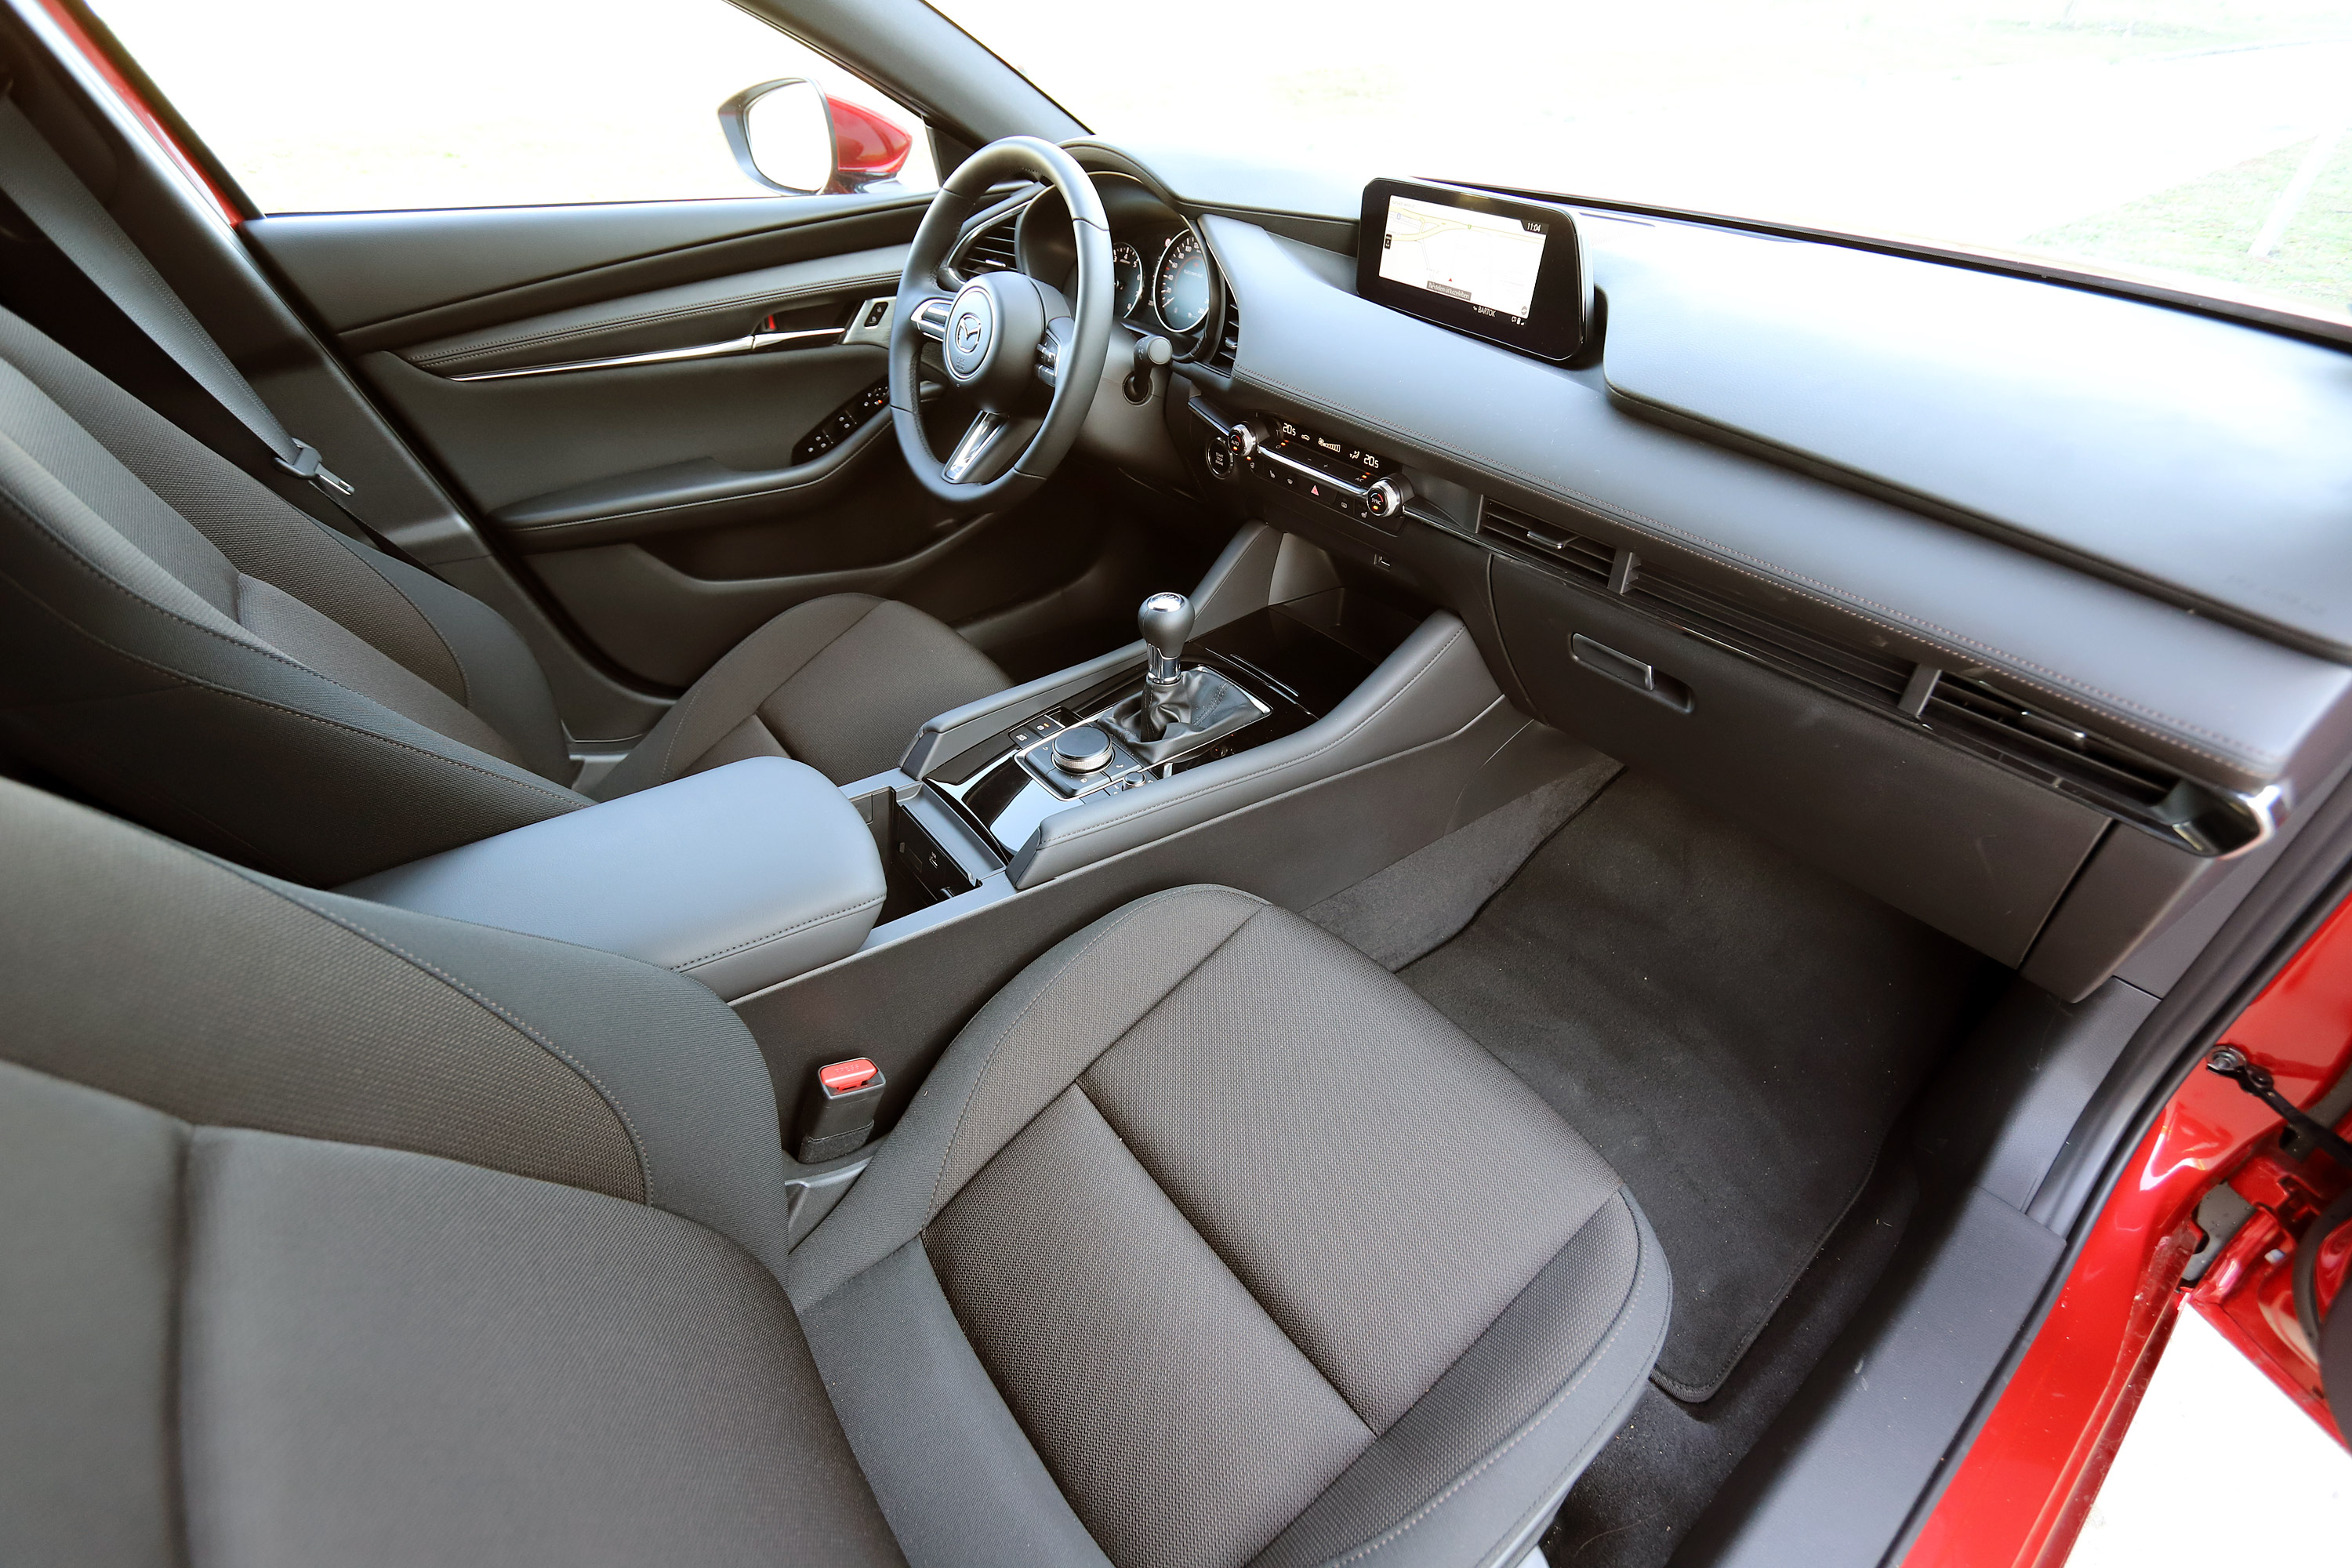 Benzinmotor, ami eddig még senkinek nem sikerült – Mazda3 Skyactiv-X teszt 30